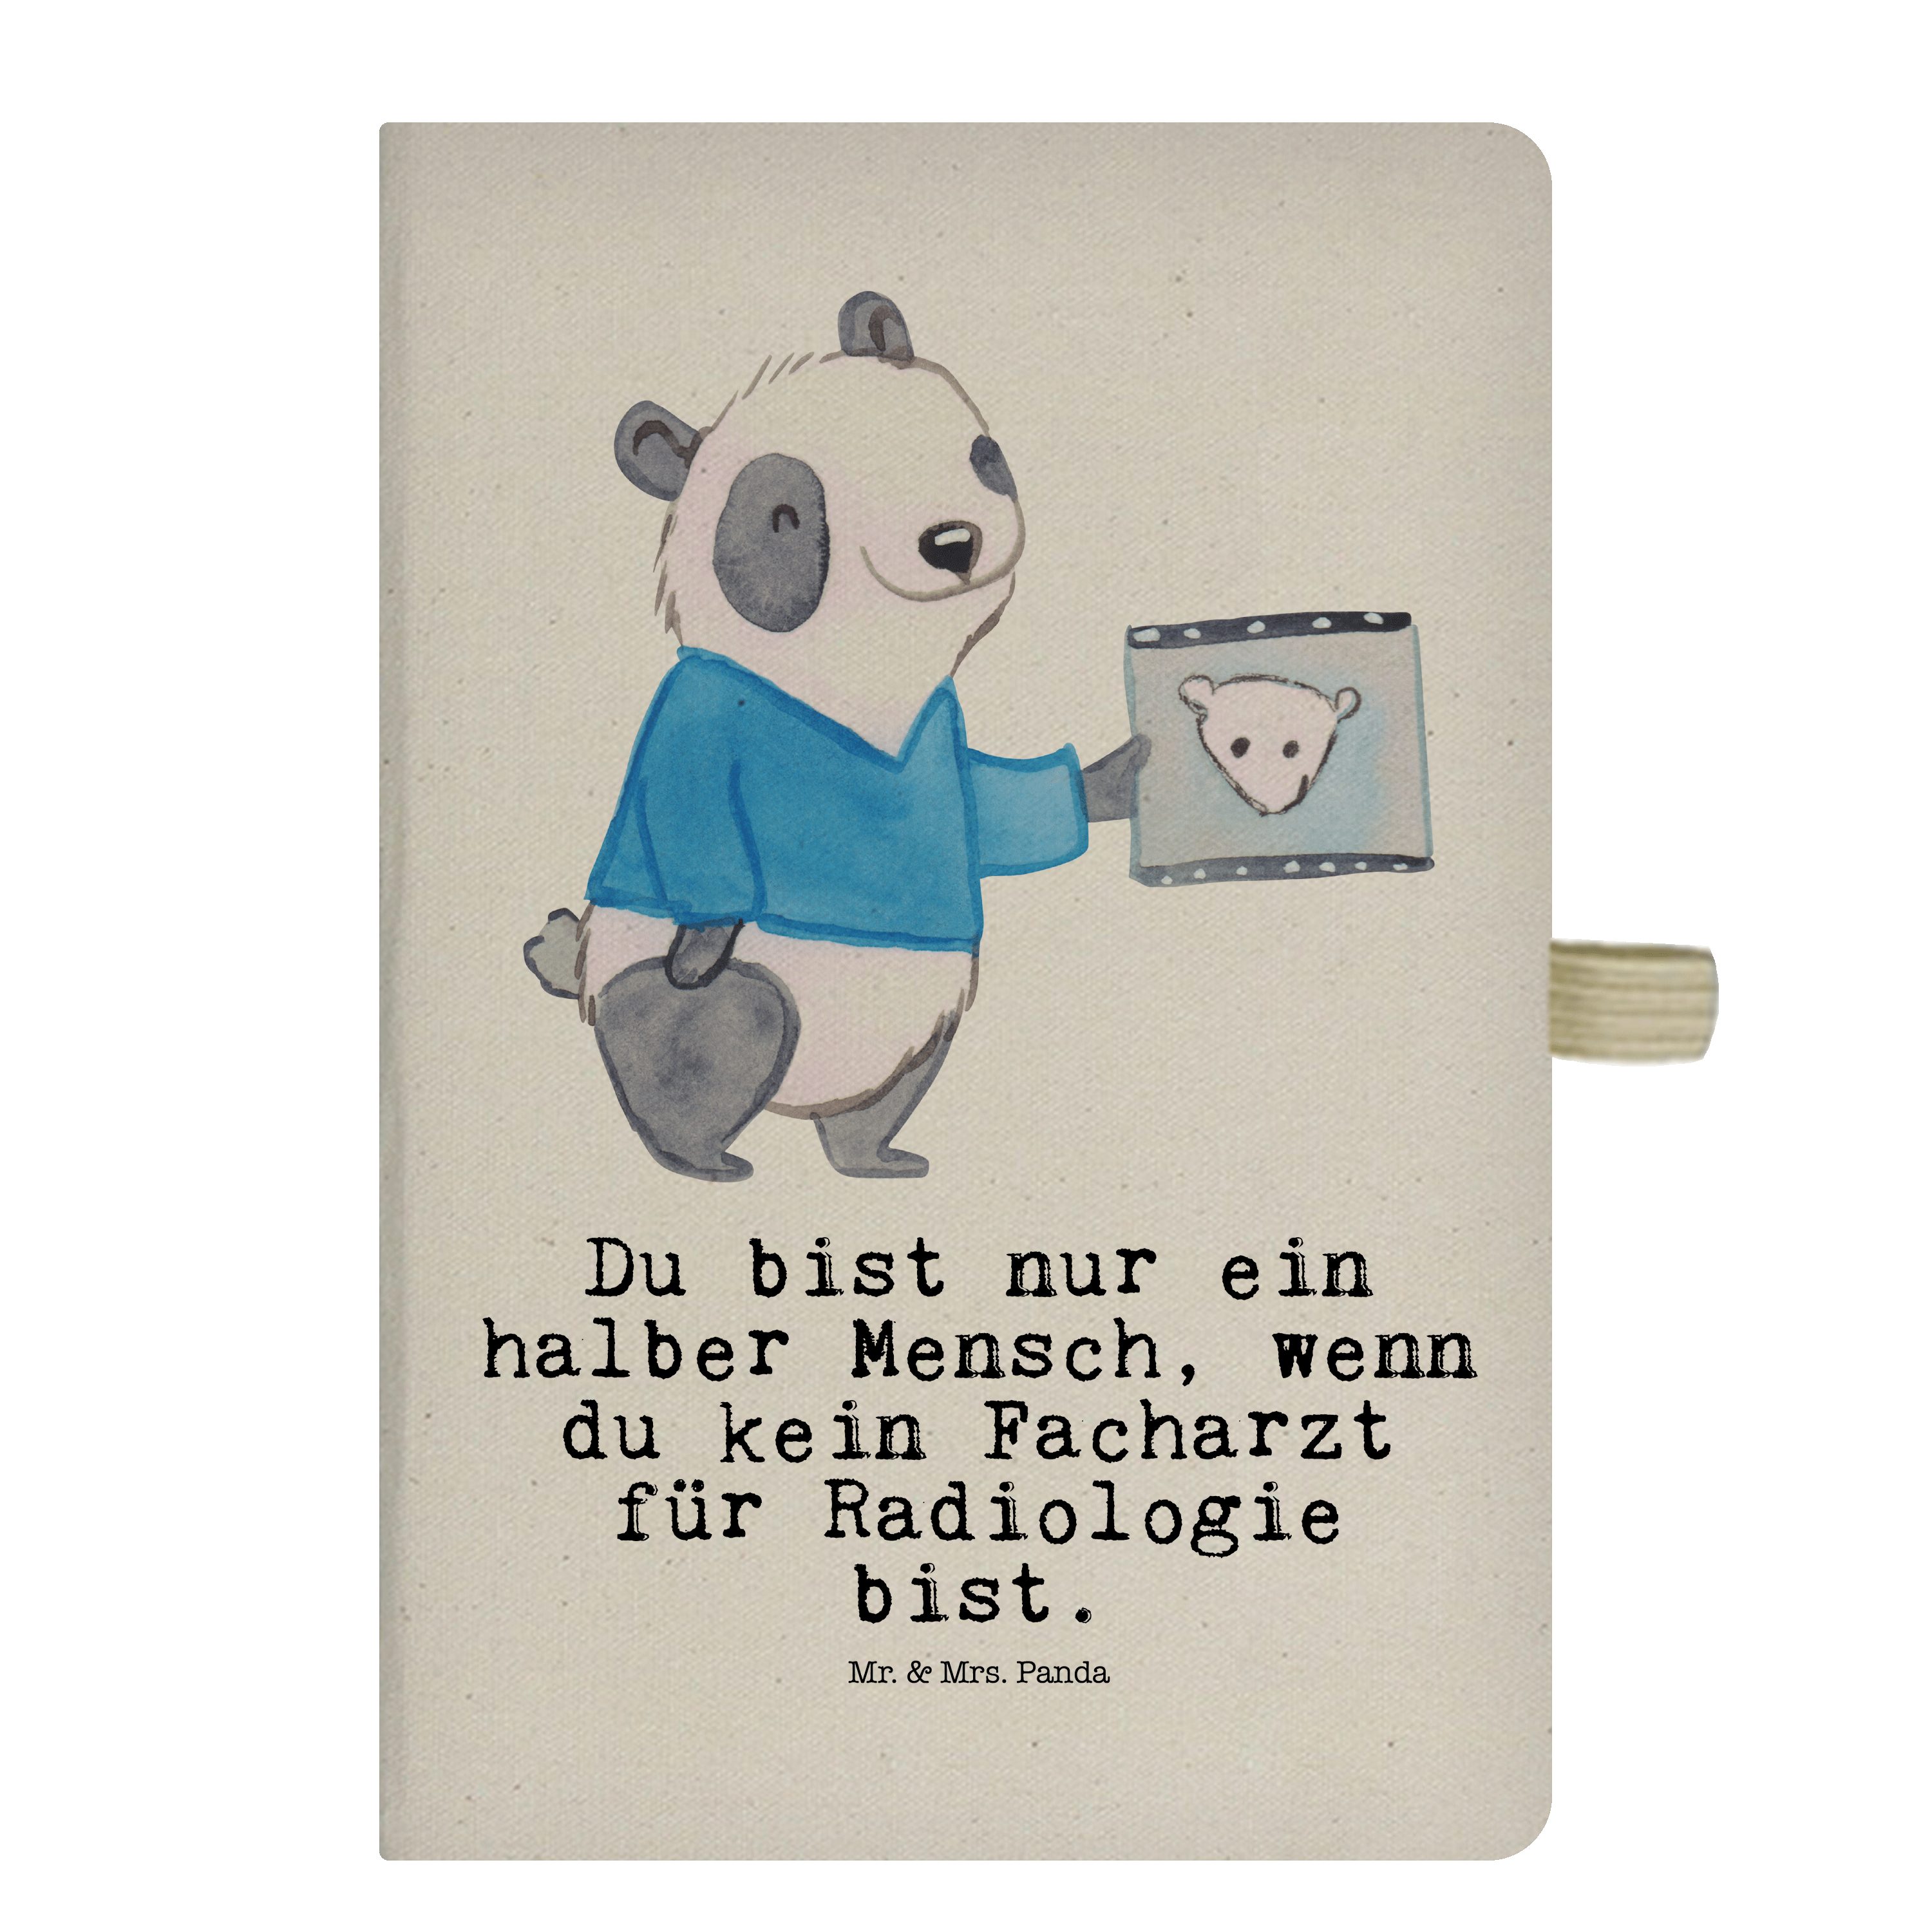 Mr. & Mrs. Panda Notizbuch Facharzt für Radiologie mit Herz - Transparent - Geschenk, Dankeschön Mr. & Mrs. Panda